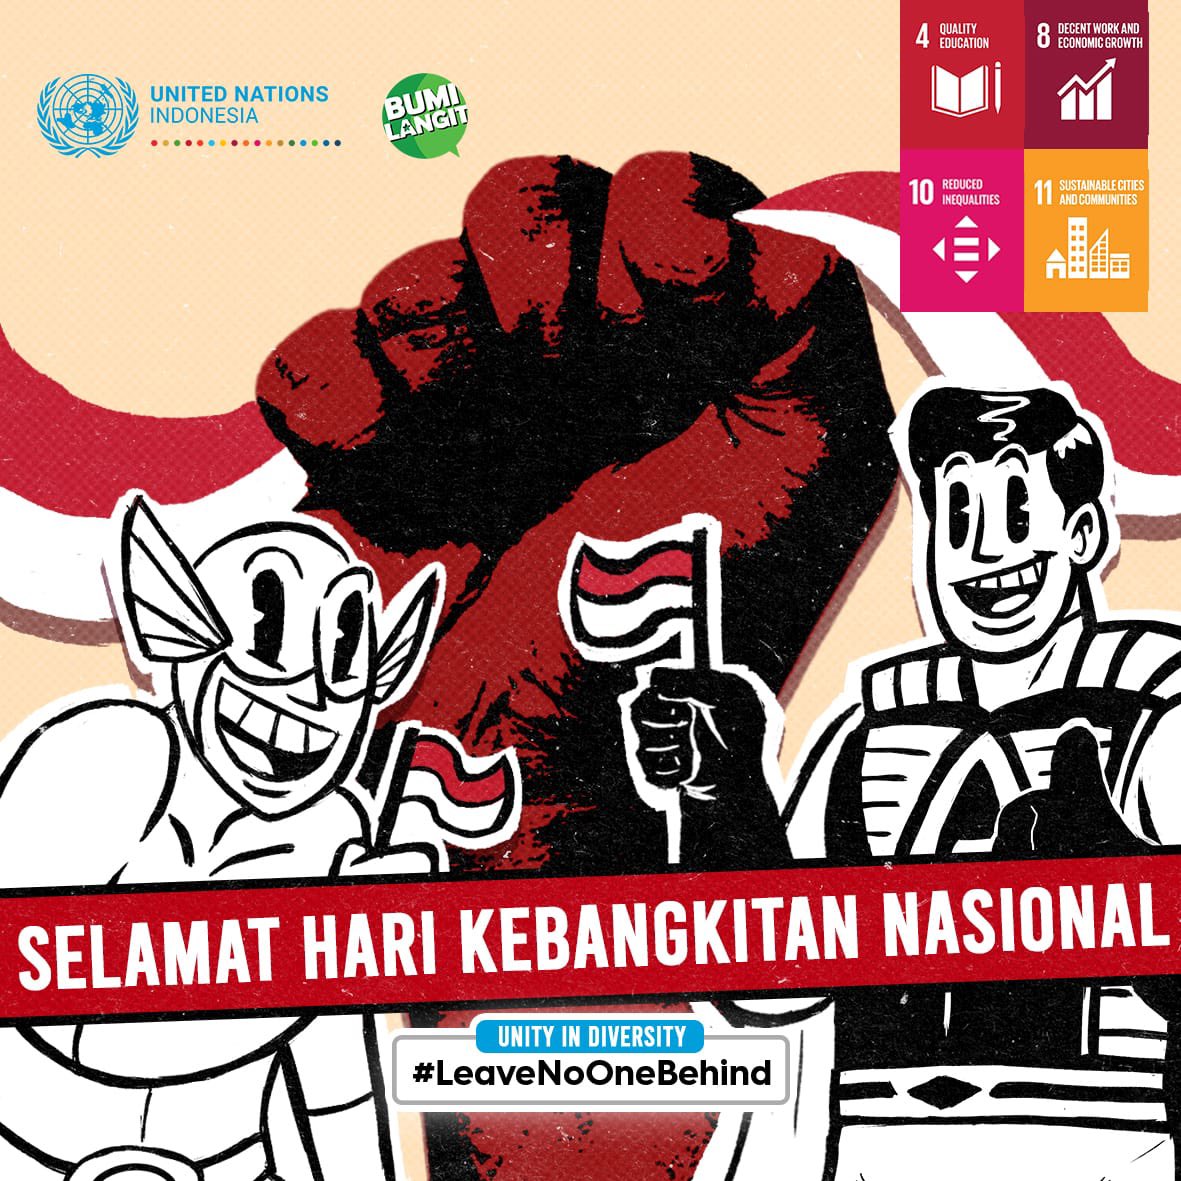 🔥🇮🇩 Selamat Hari Kebangkitan Nasional Sobat UN dan Rakyat Bumilangit🇮🇩🔥

#HariKebangkitanNasional #BangkitBersama #IndonesiaHebat #MerahPutih #LeaveNoOneBehind #PatriotAdalahKita #UNtukIndonesia #UNinIndonesia #Bumilangit